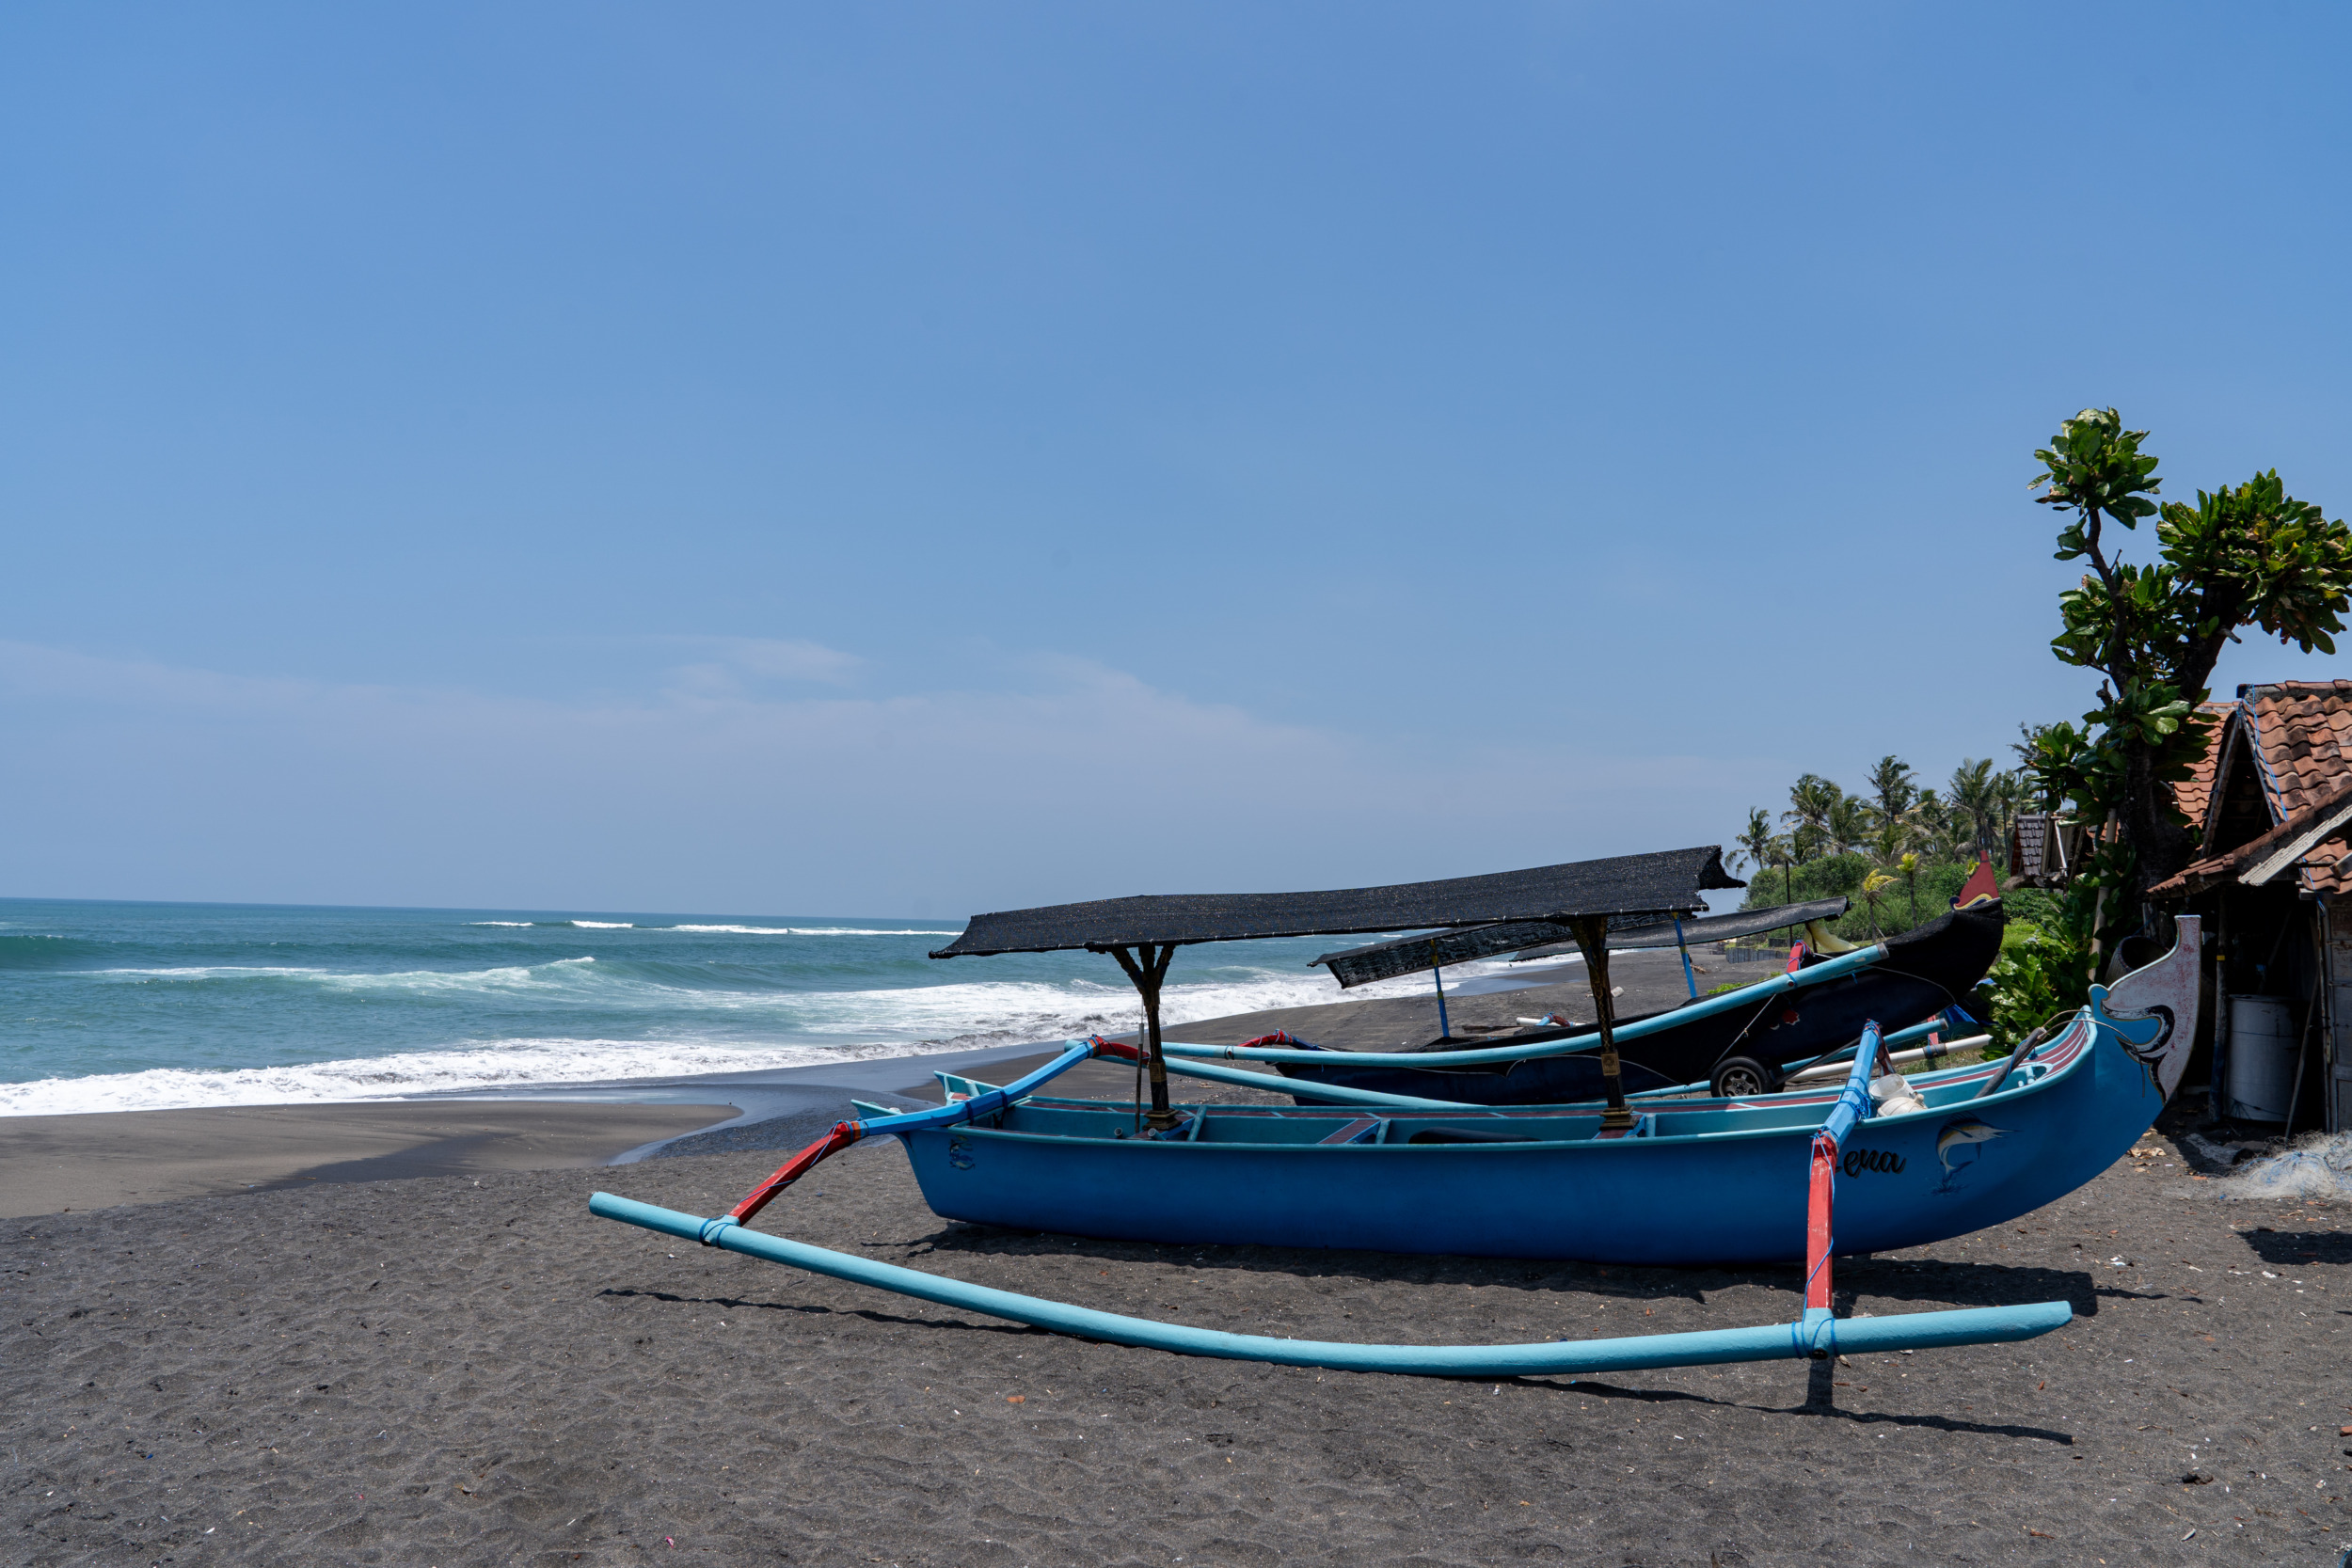 Pantai Munggu ist ein typischer Fischerstrand auf Bali